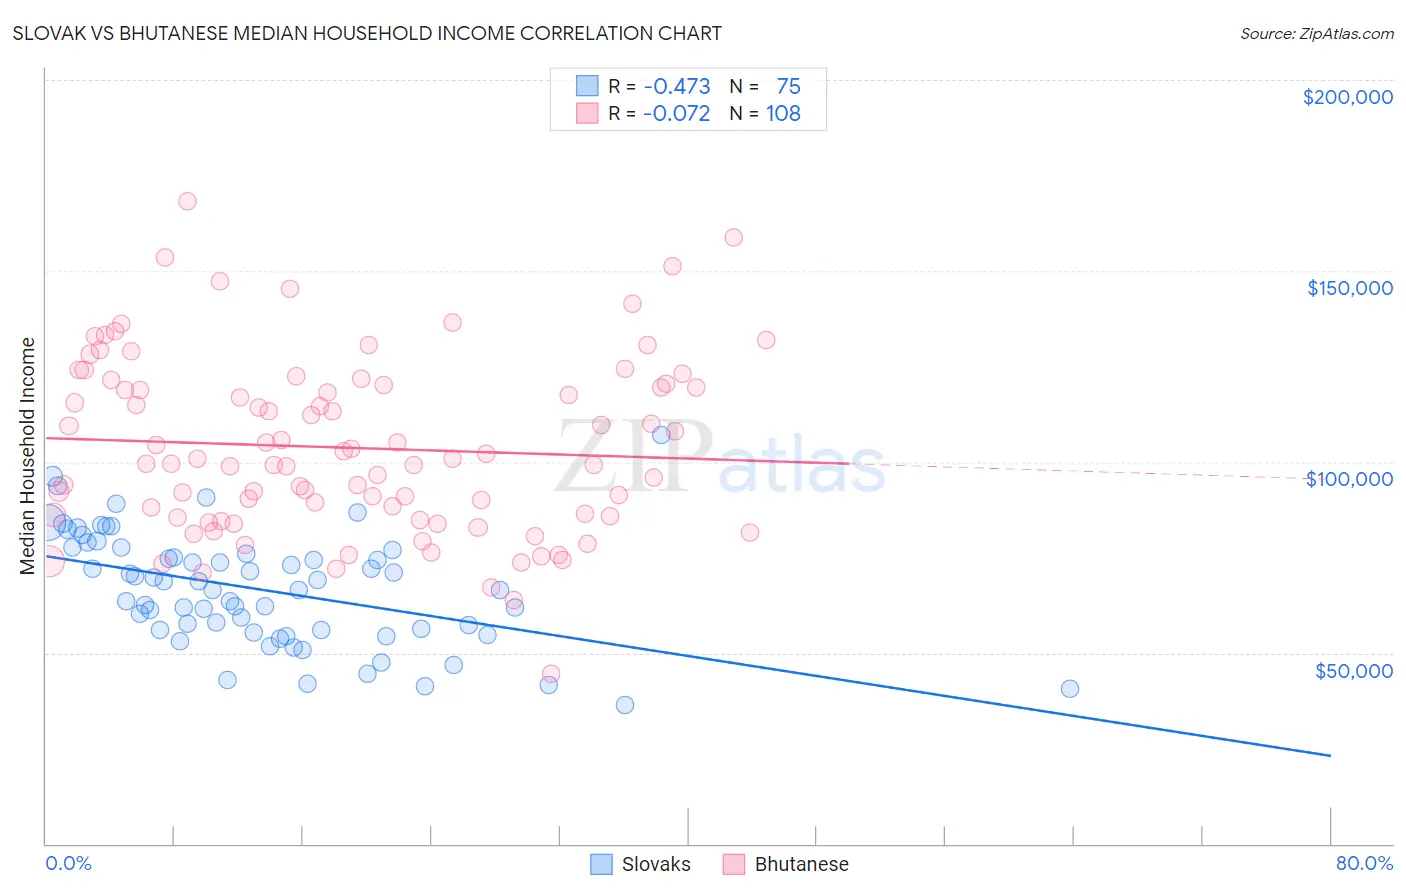 Slovak vs Bhutanese Median Household Income